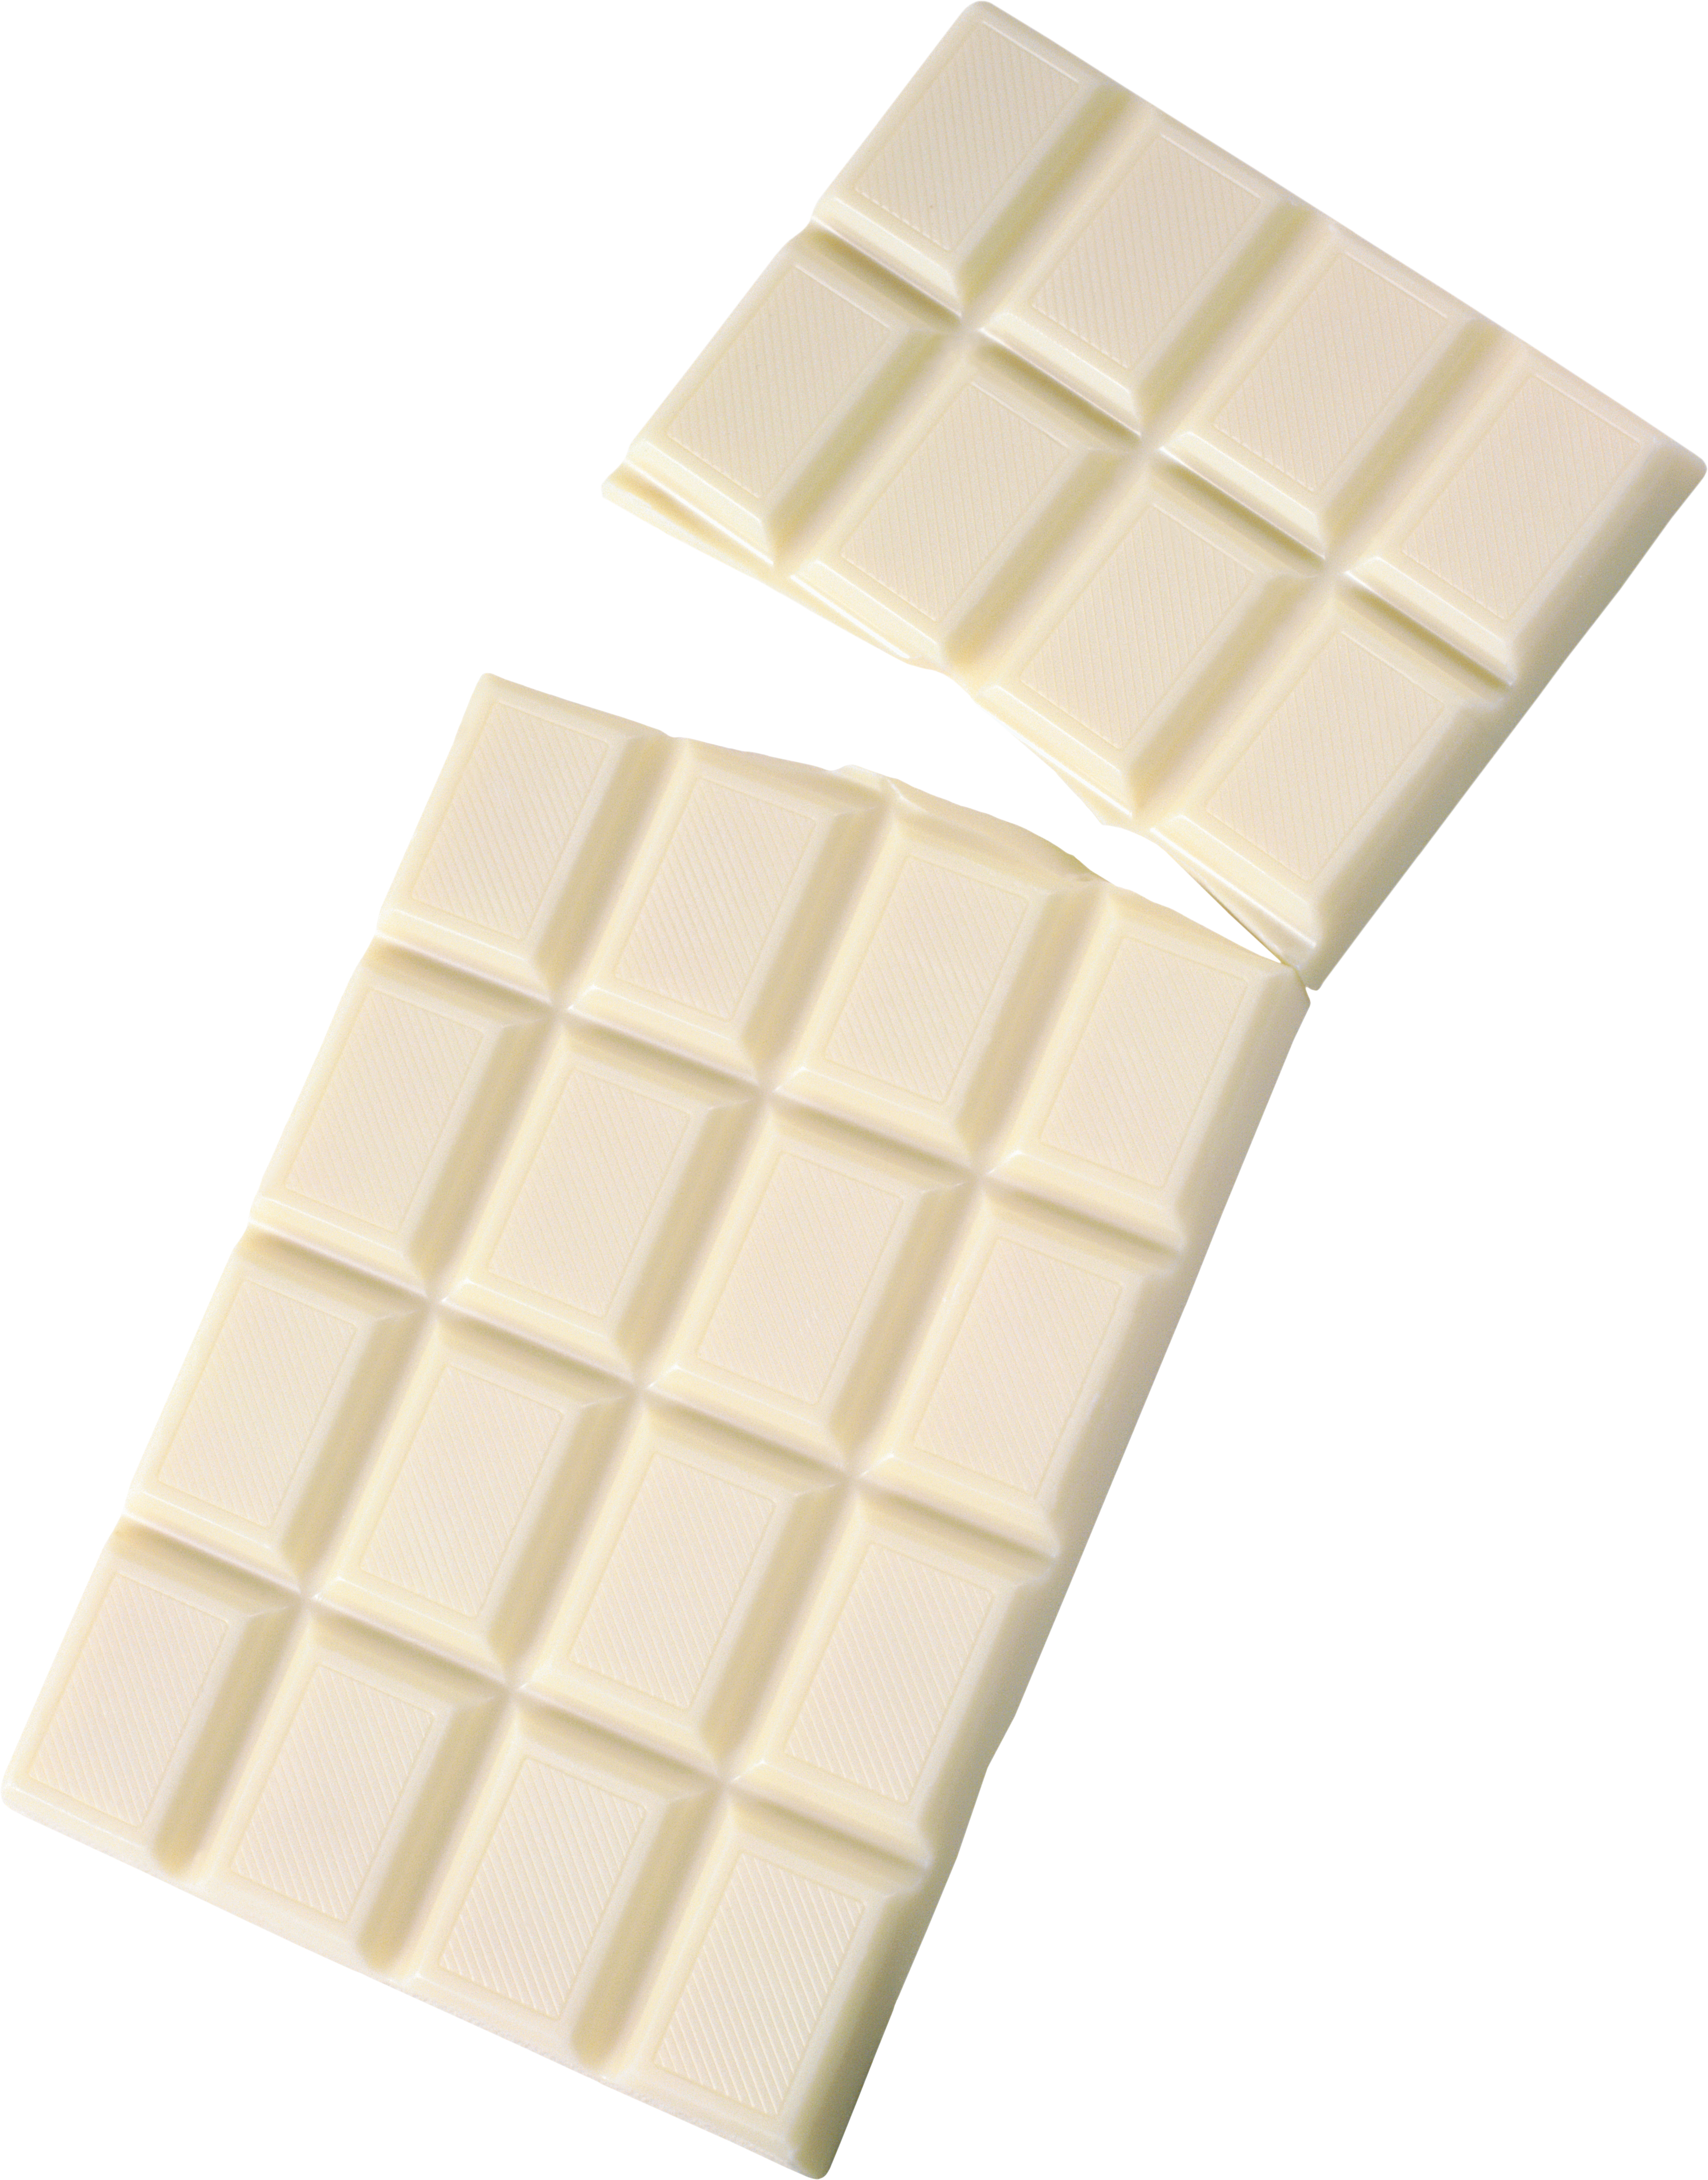 Cioccolato bianco